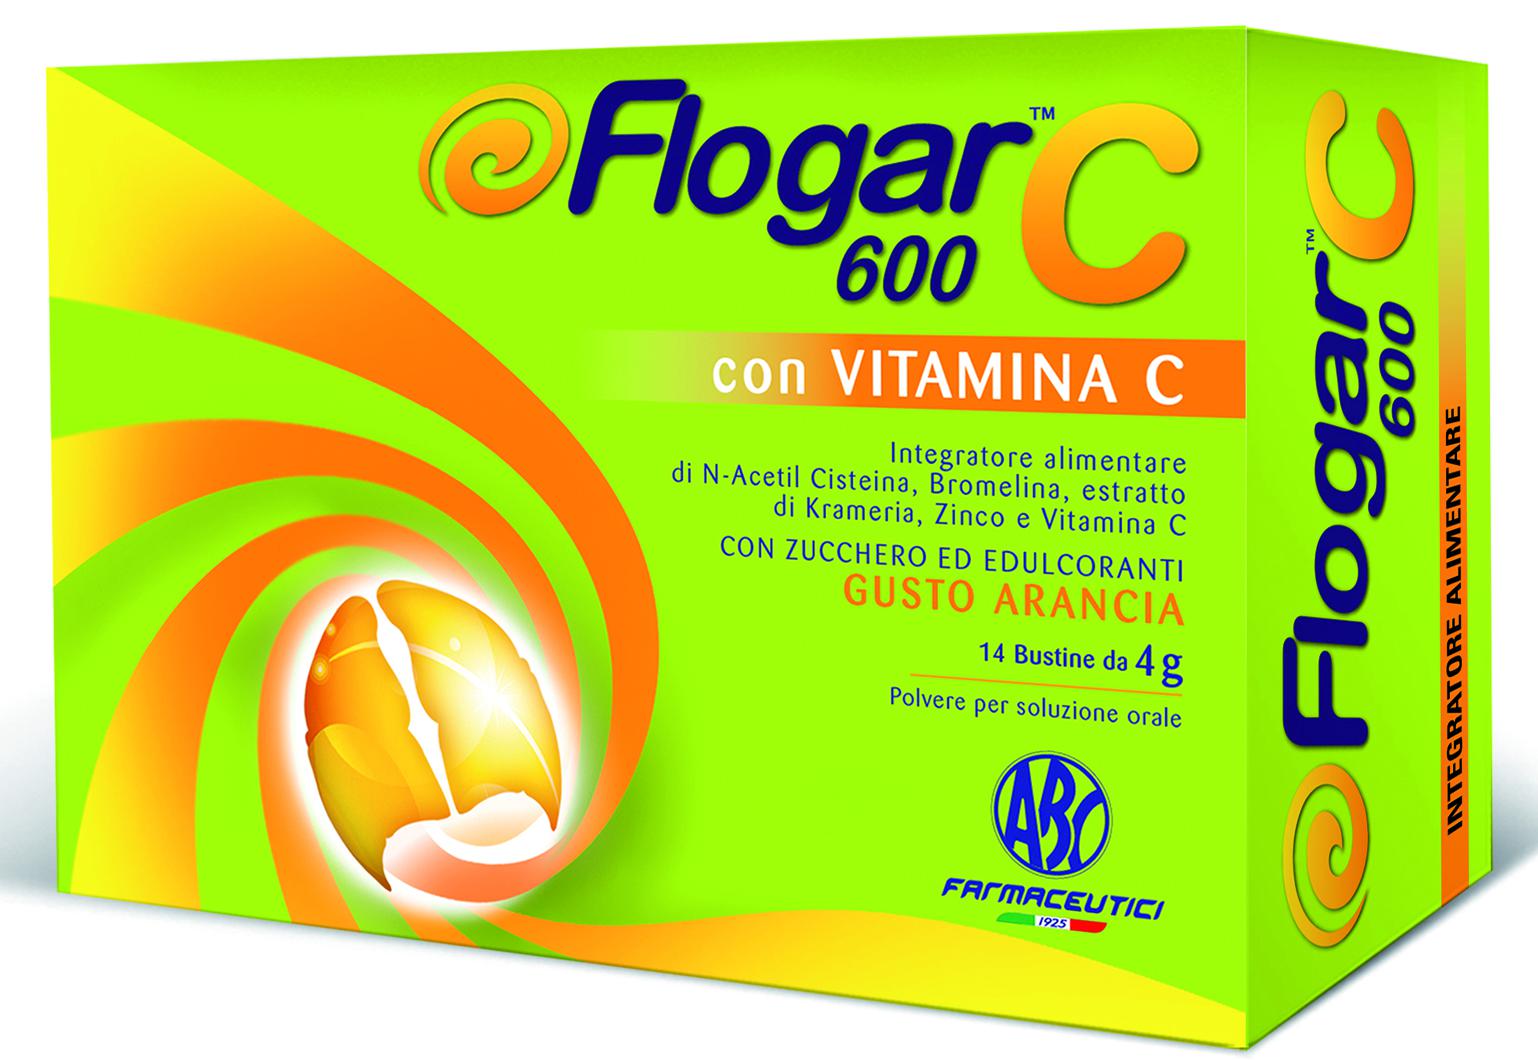 FLOGAR C 600